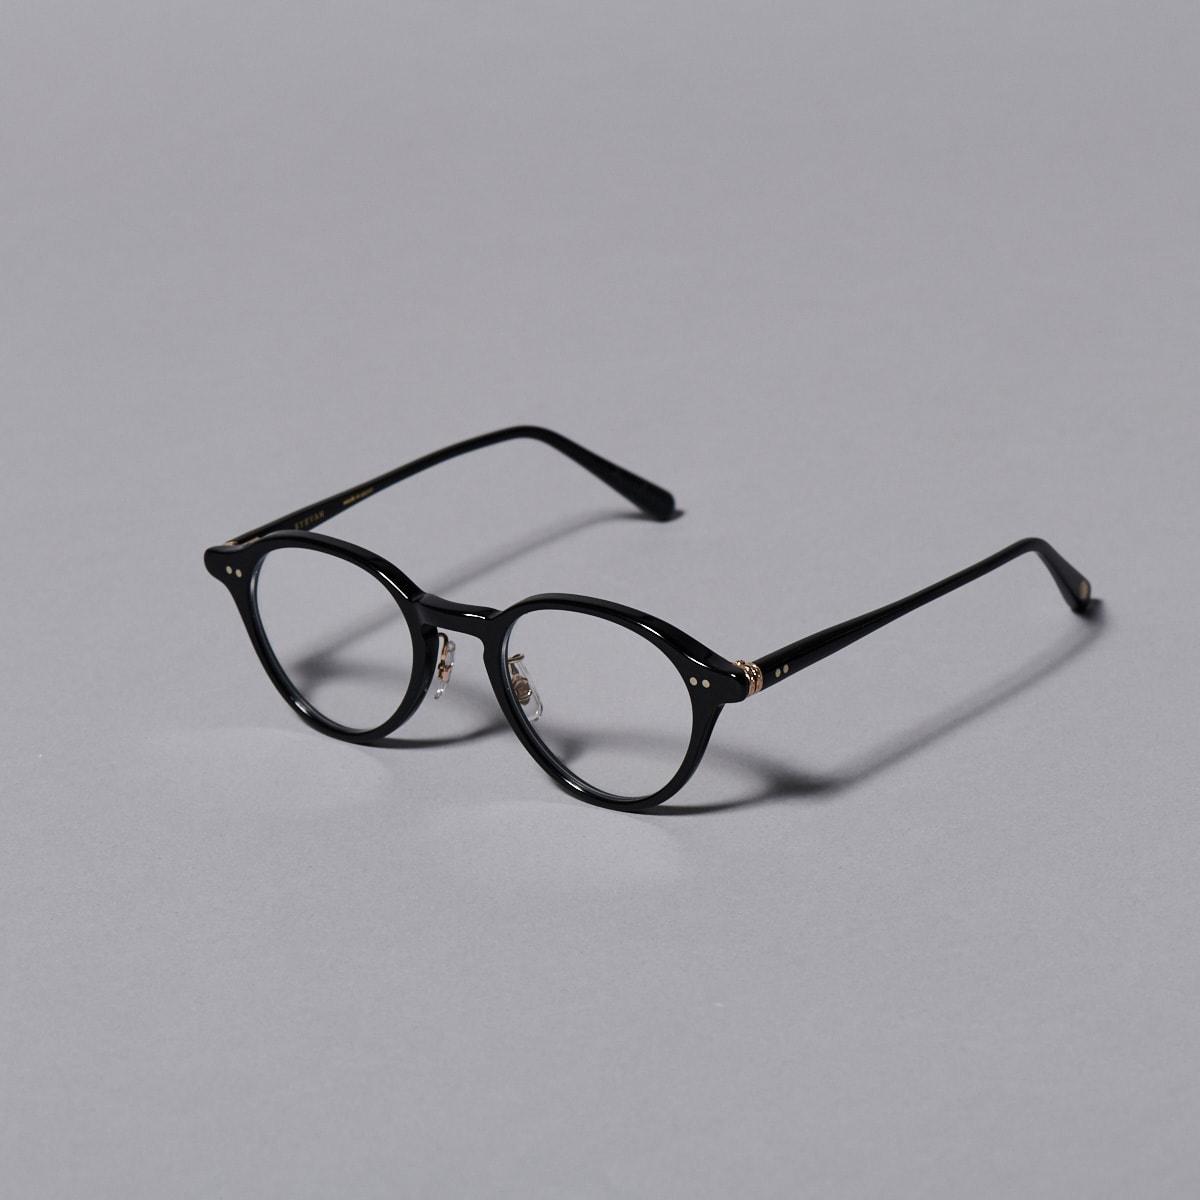 セルフレームの黒縁メガネ。定番から新作まで、黒のスタンダードアイテム - Slide:5